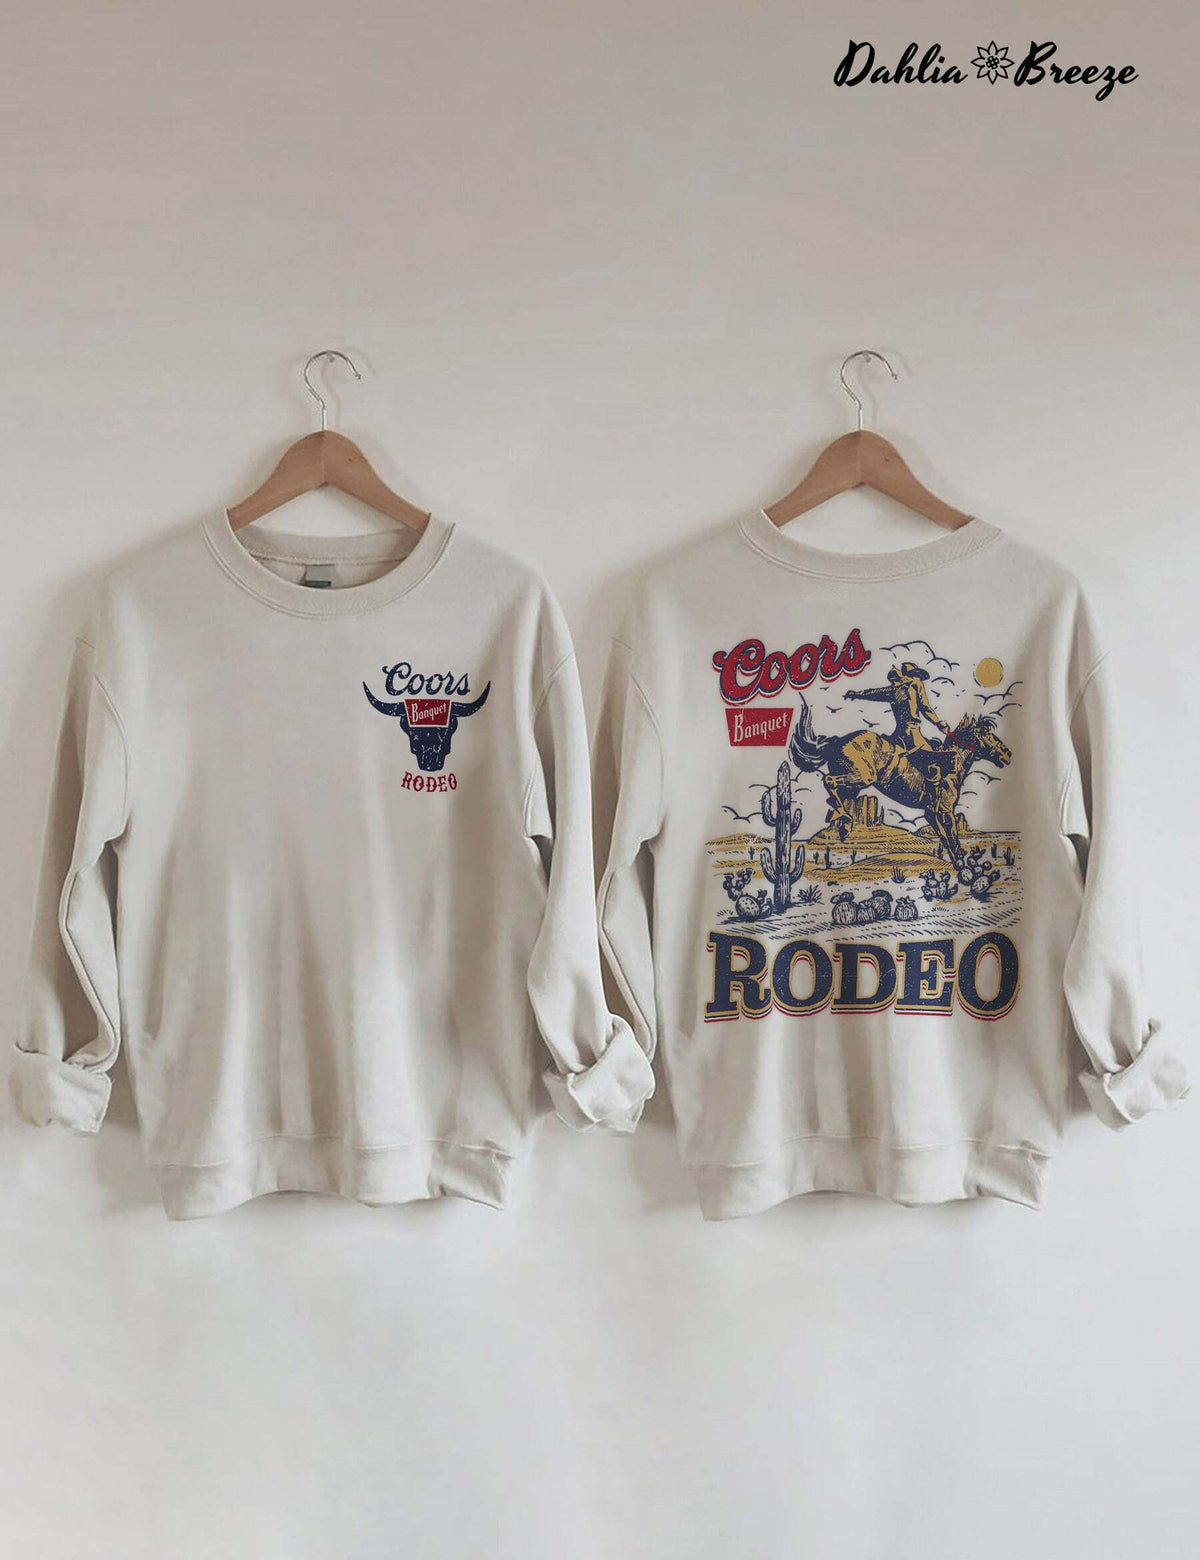 Coors Banquet Rodeo Sweatshirt